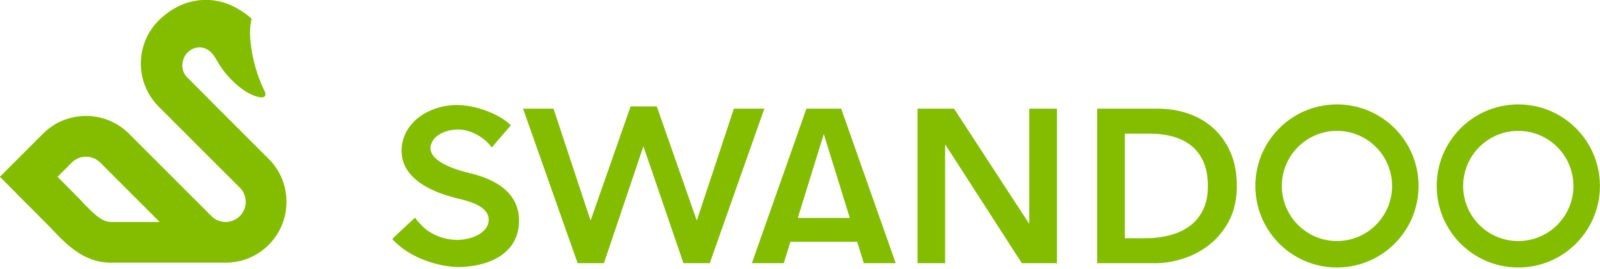 Logo der Marke Swandoo